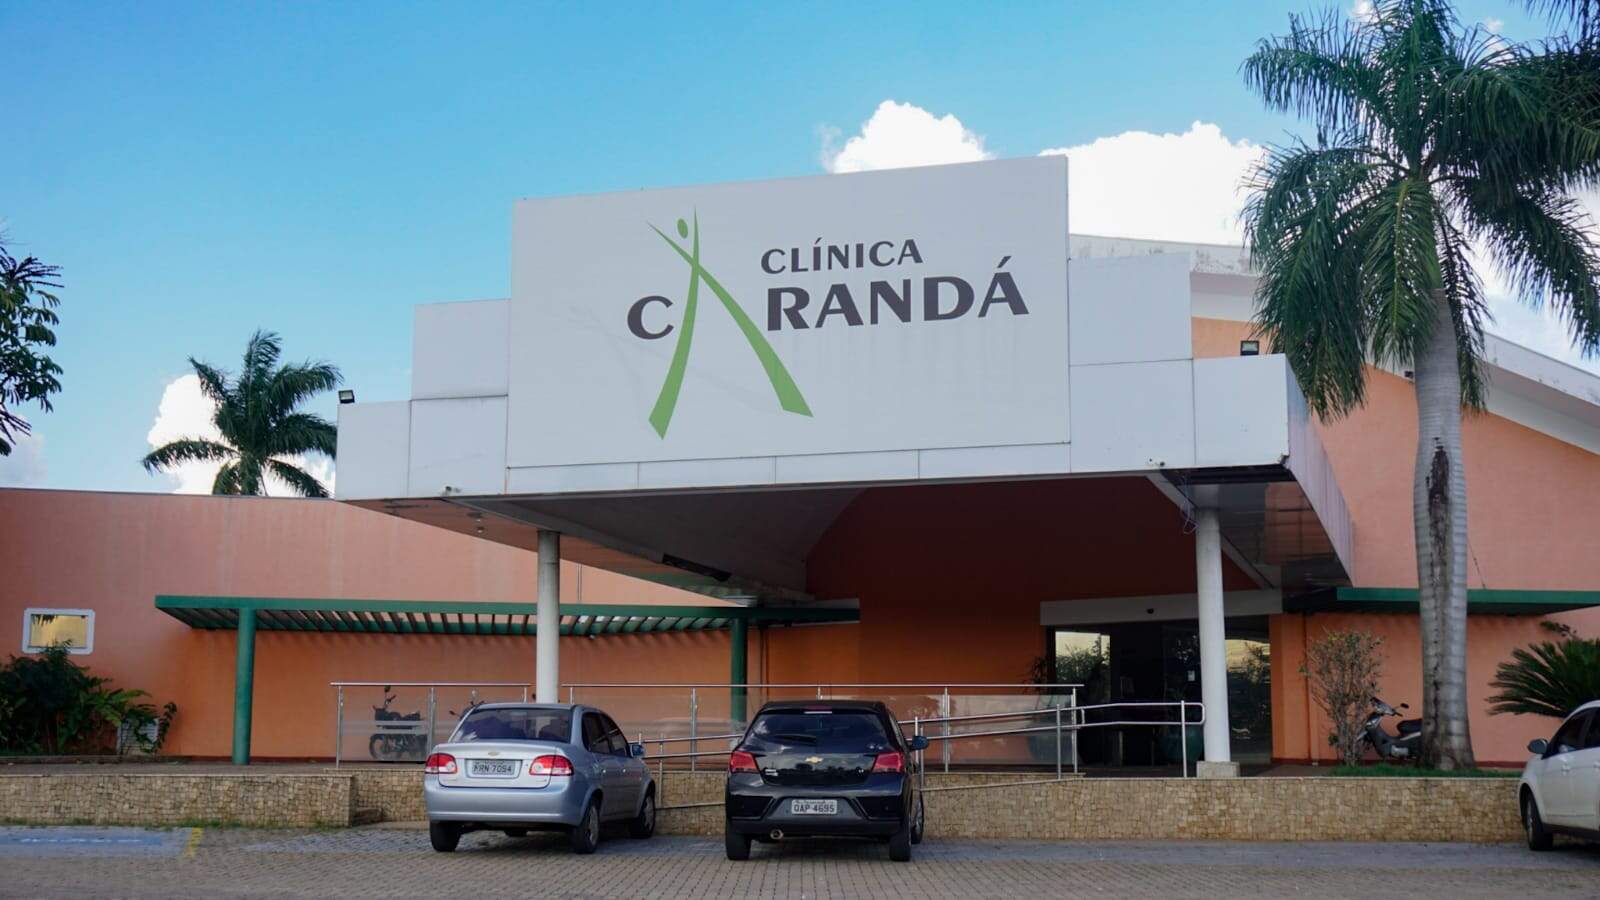 Juiz mantém pacientes internados na Clínica Carandá, mas impede novas entradas